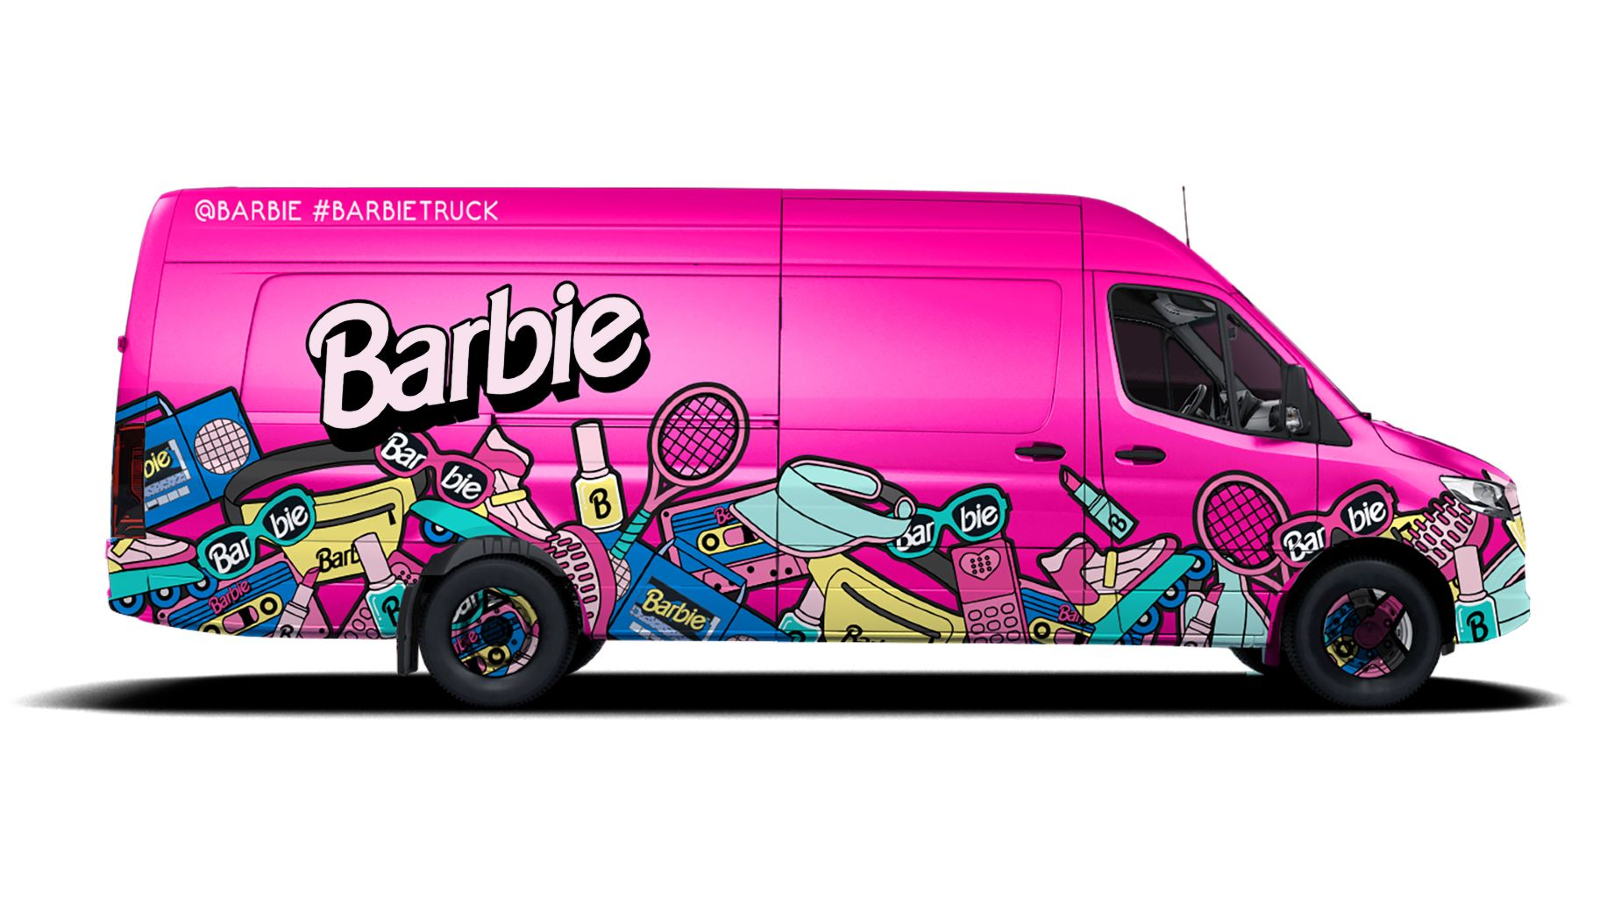 koppel Mooie vrouw moeilijk Barbie-themed truck, pop-up shop to make three stops in Arizona during U.S.  tour